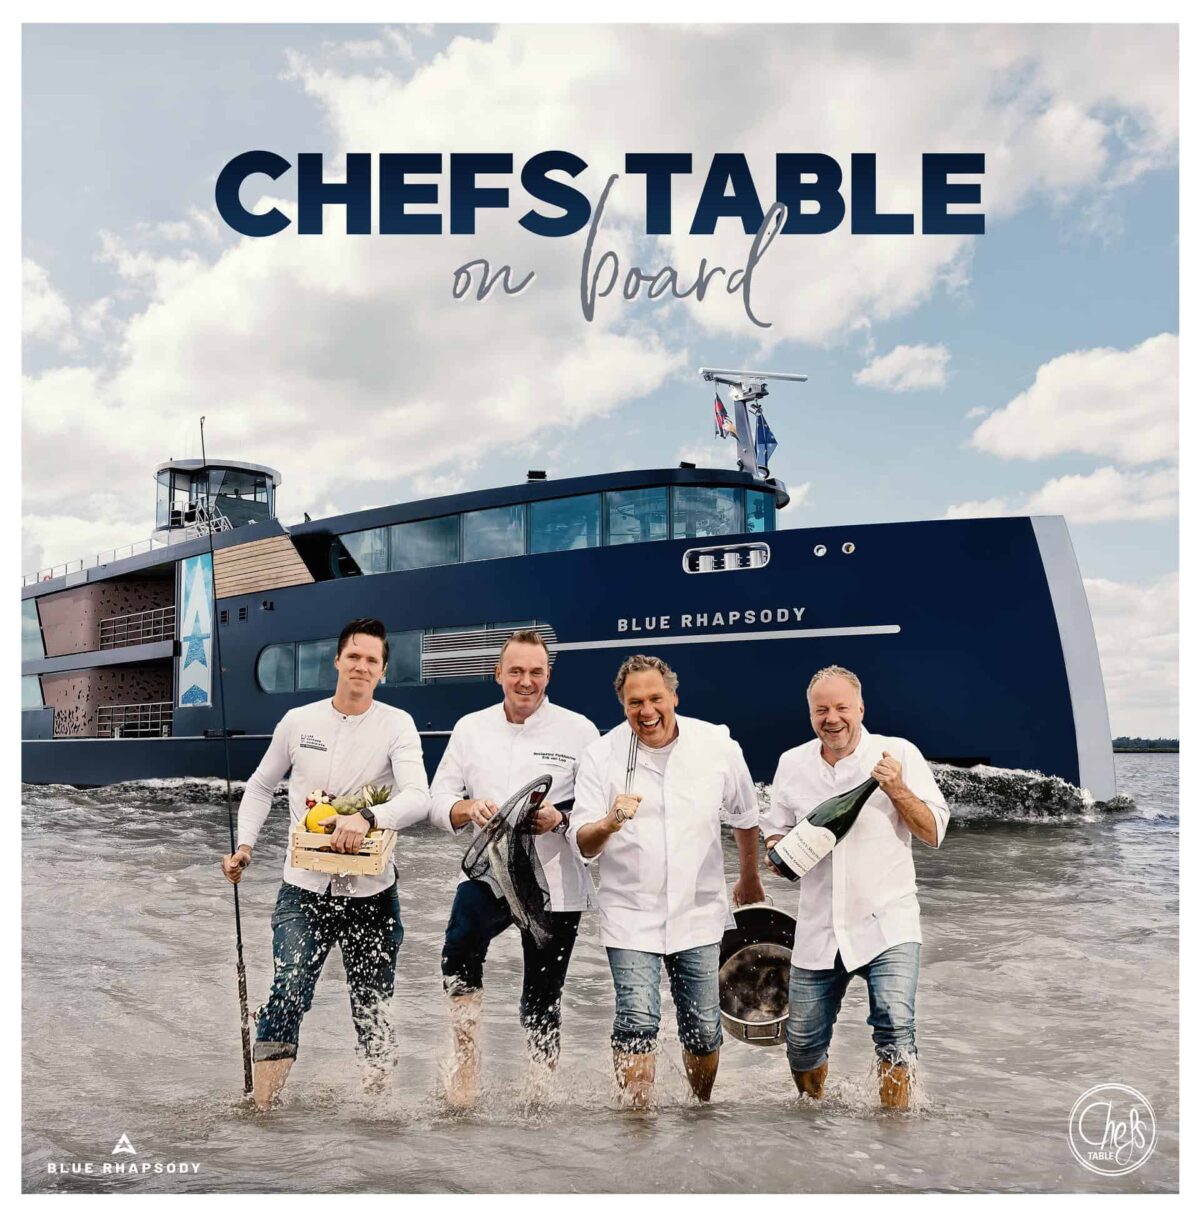 Event Inspiration - Chefs_Table_On Board bij Blue Raphsody - diner op boot met chef kok